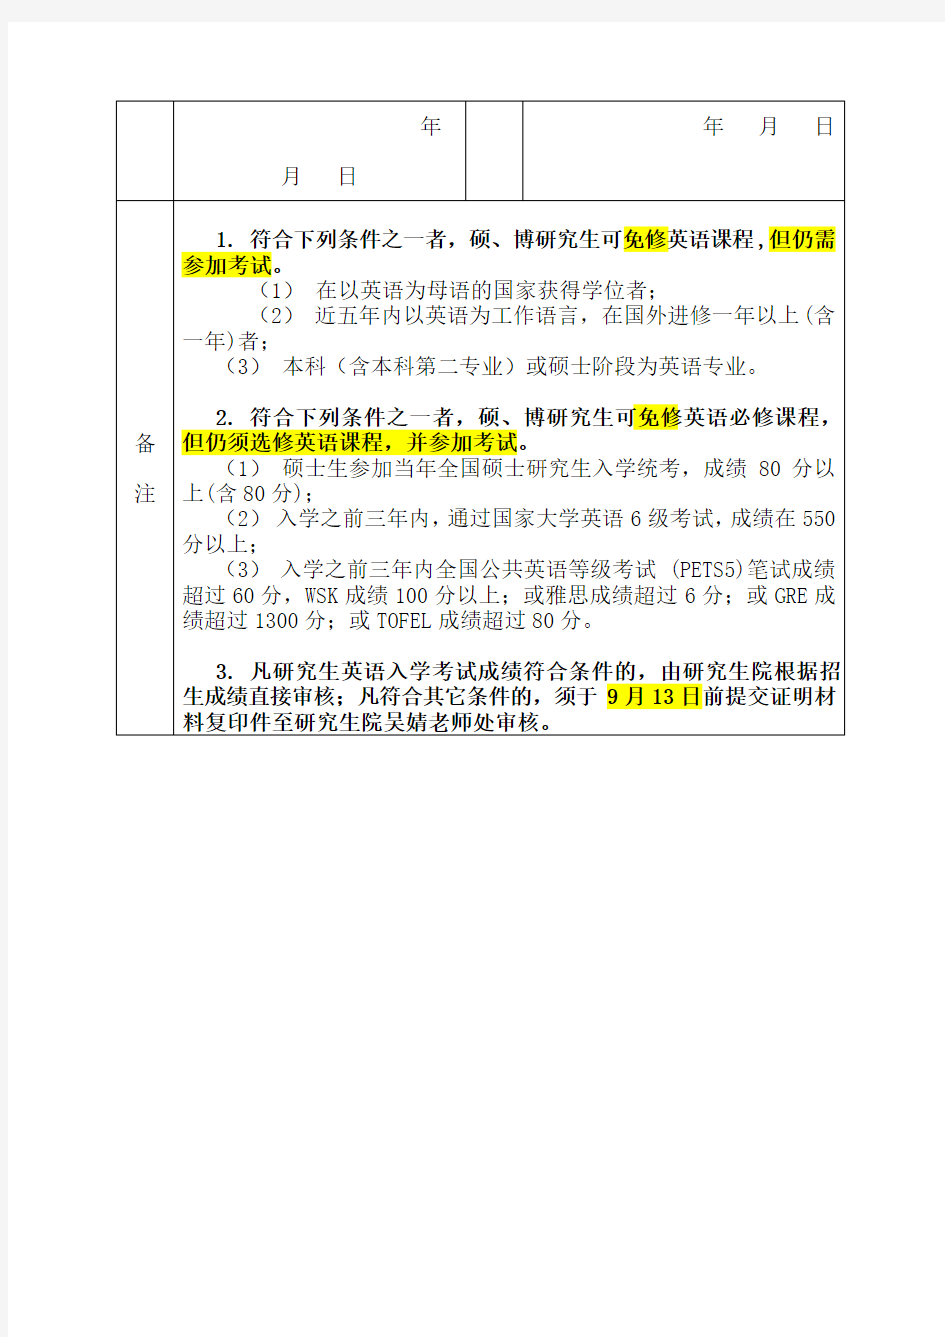 重庆医科大学研究生英语课程免修申请表